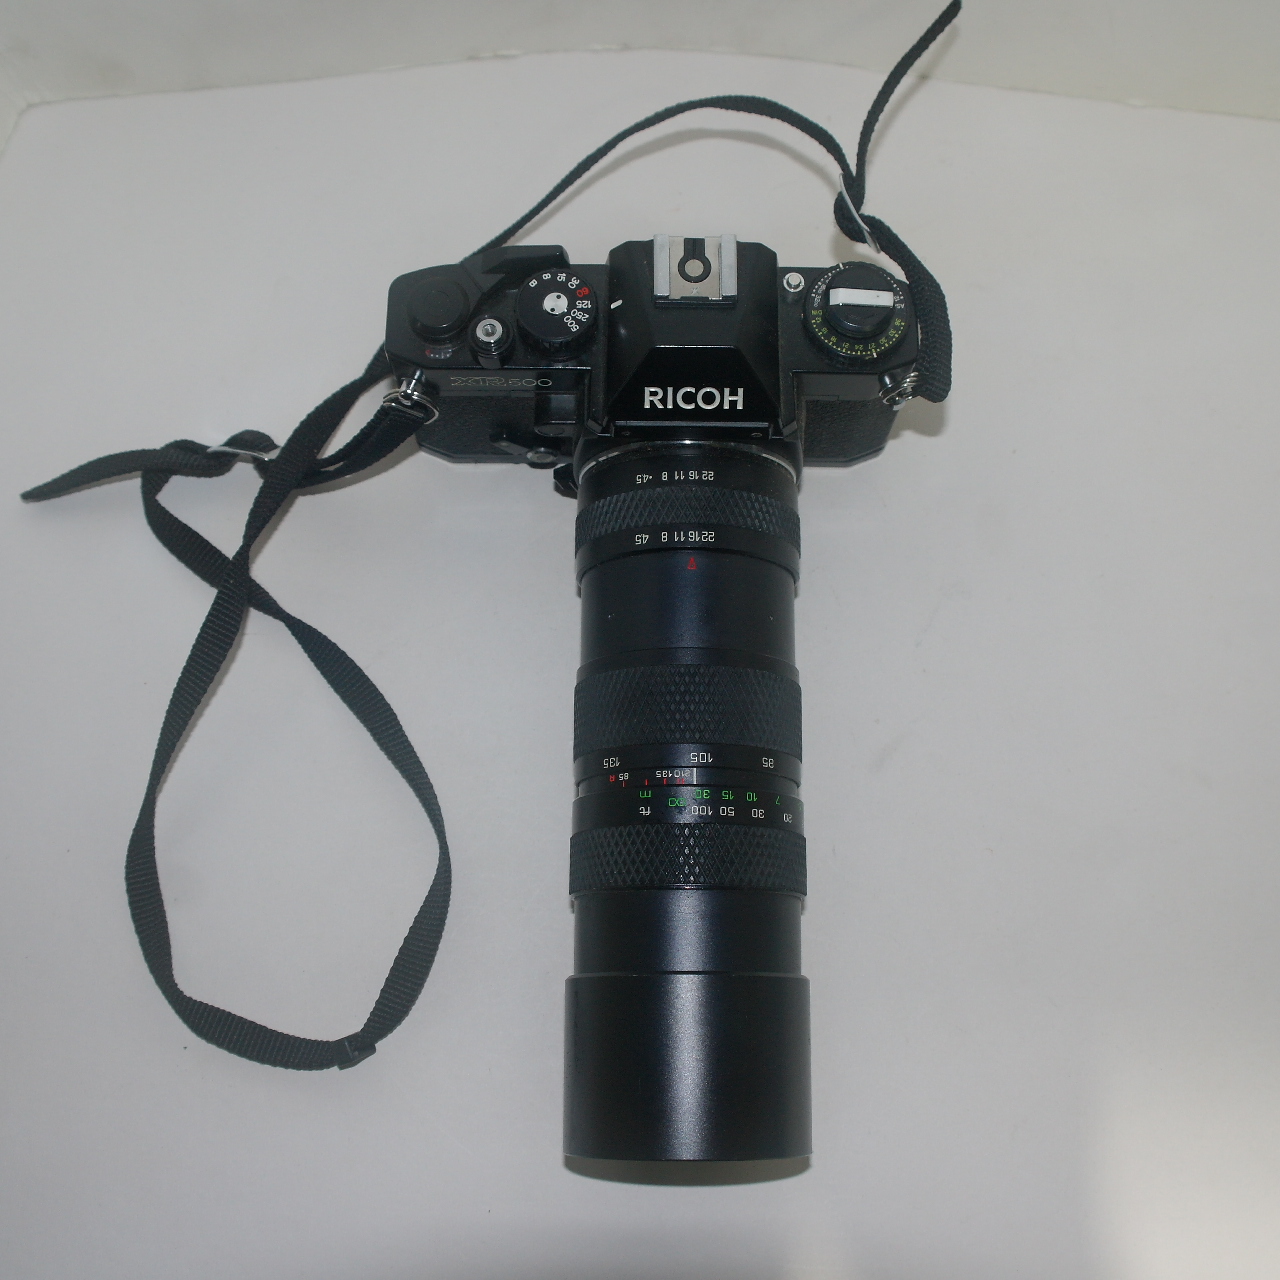 RICOH 카메라 XR500